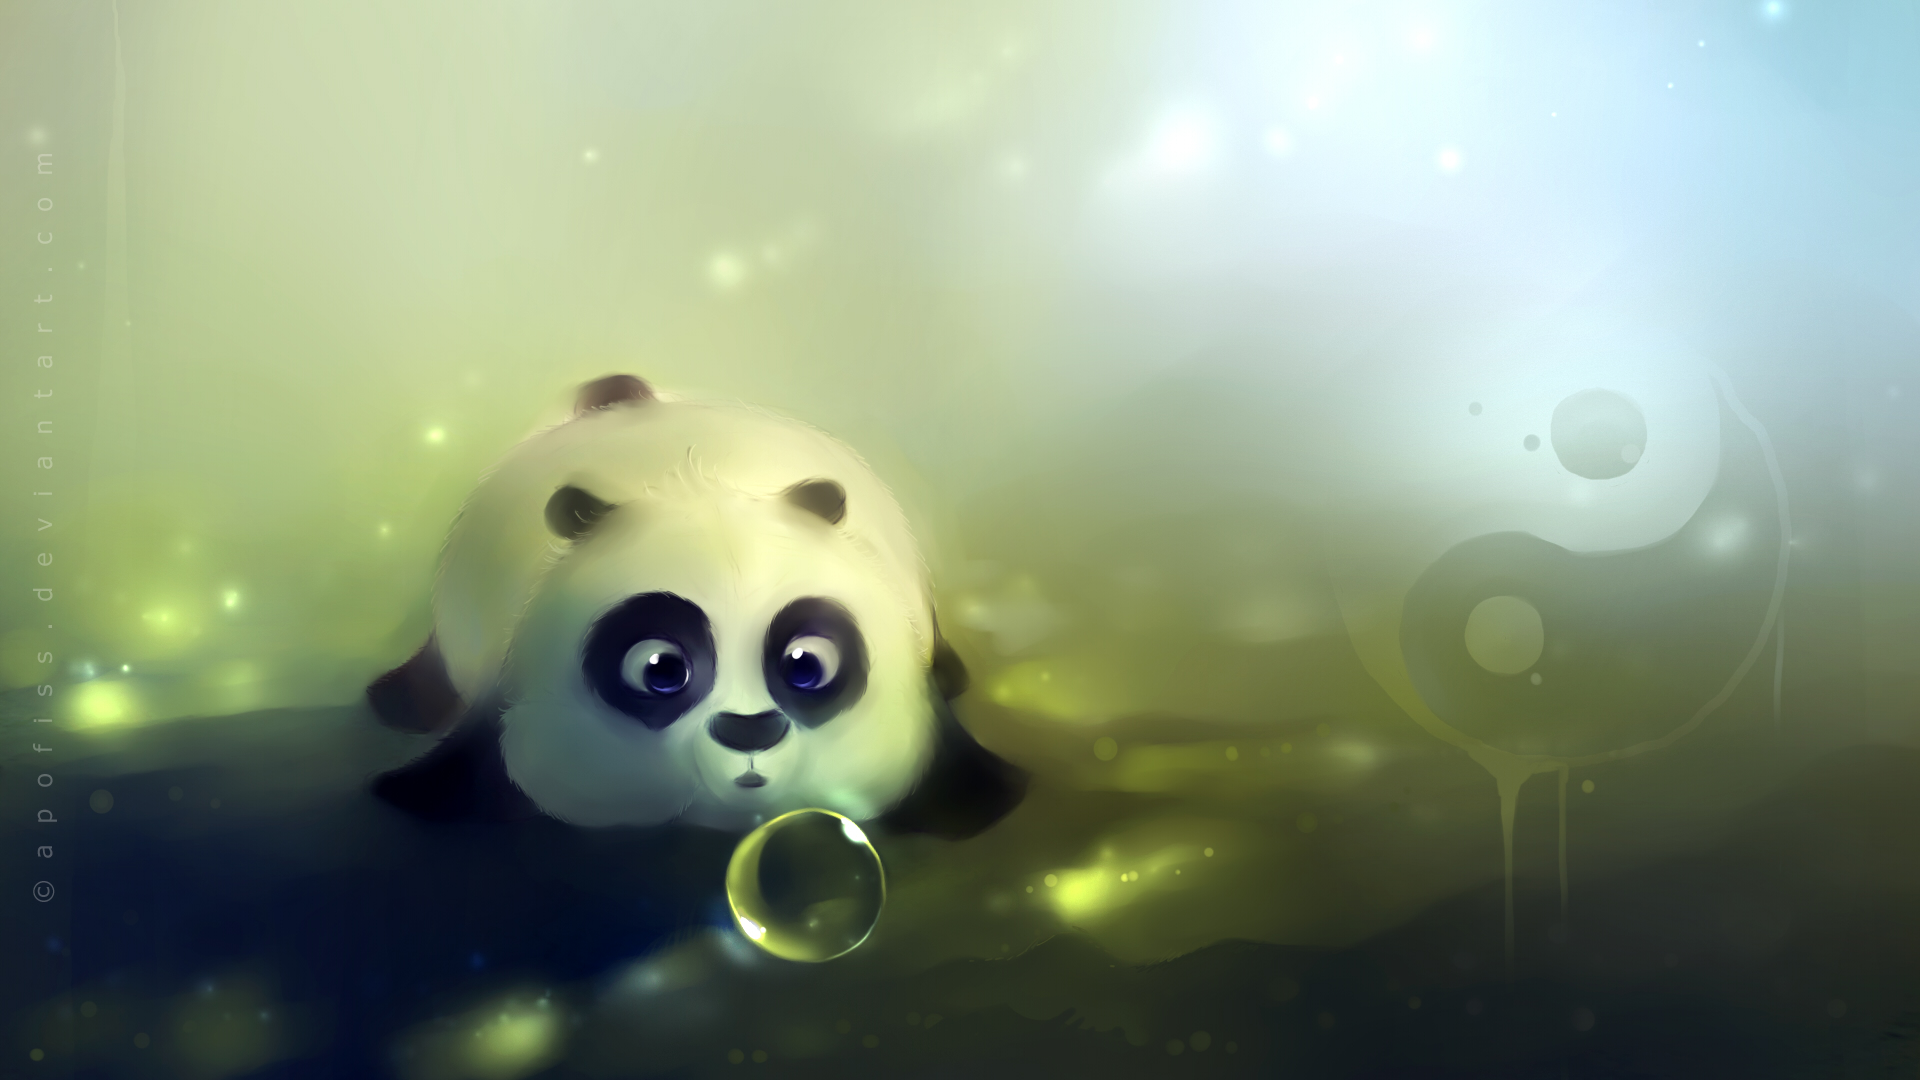 cute, panda, animal images